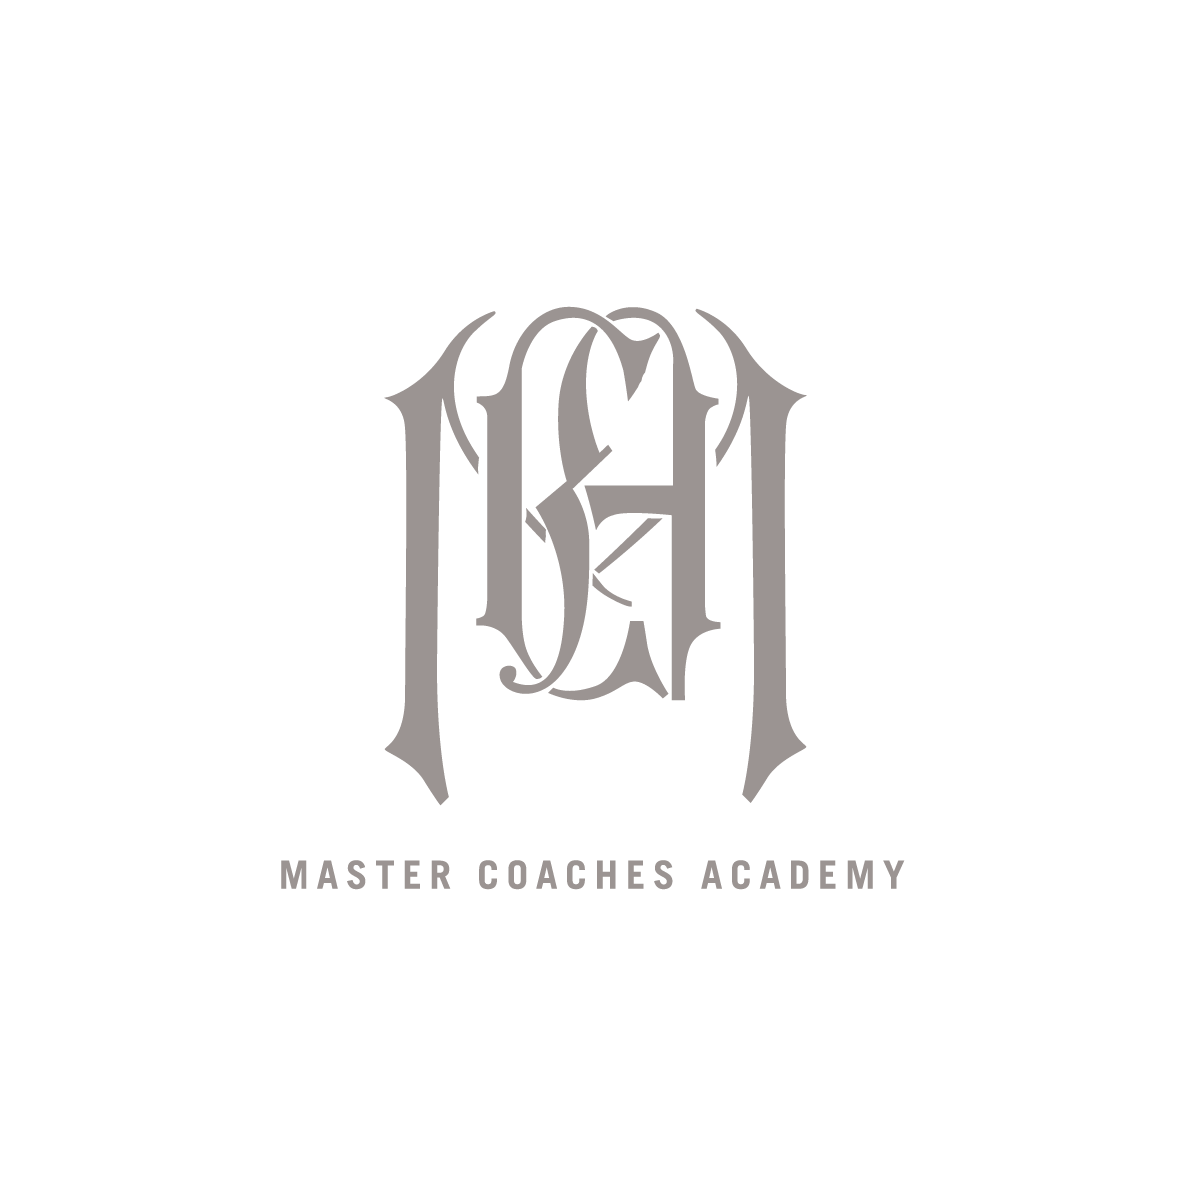 Master Coaches Academy